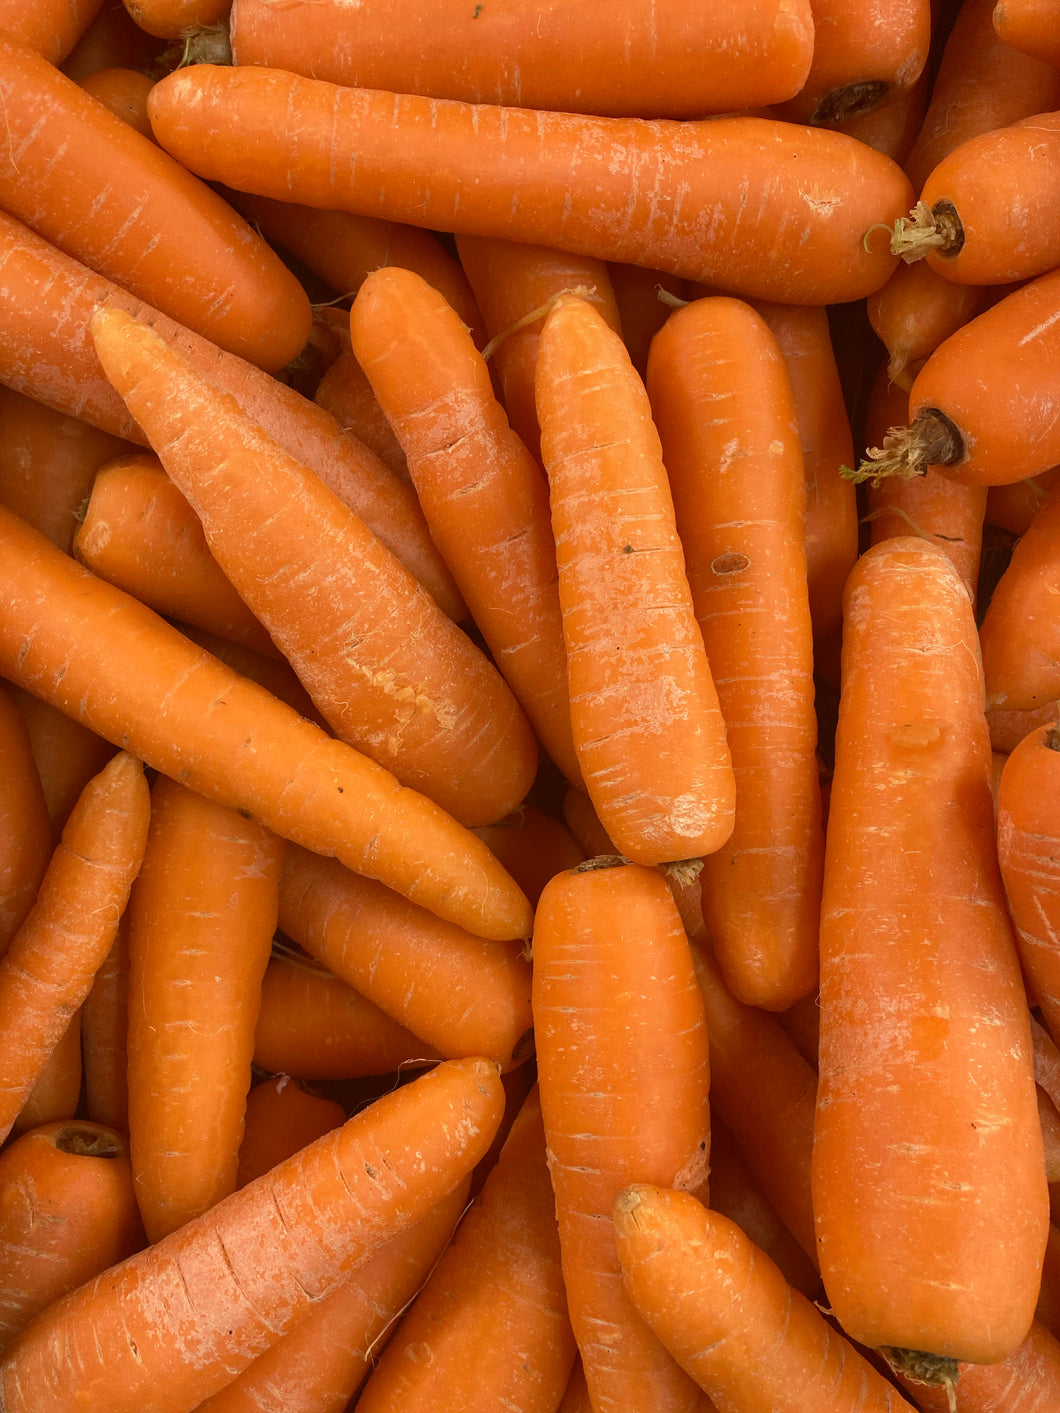 H-E-B Organics Carrots - Shop Vegetables at H-E-B